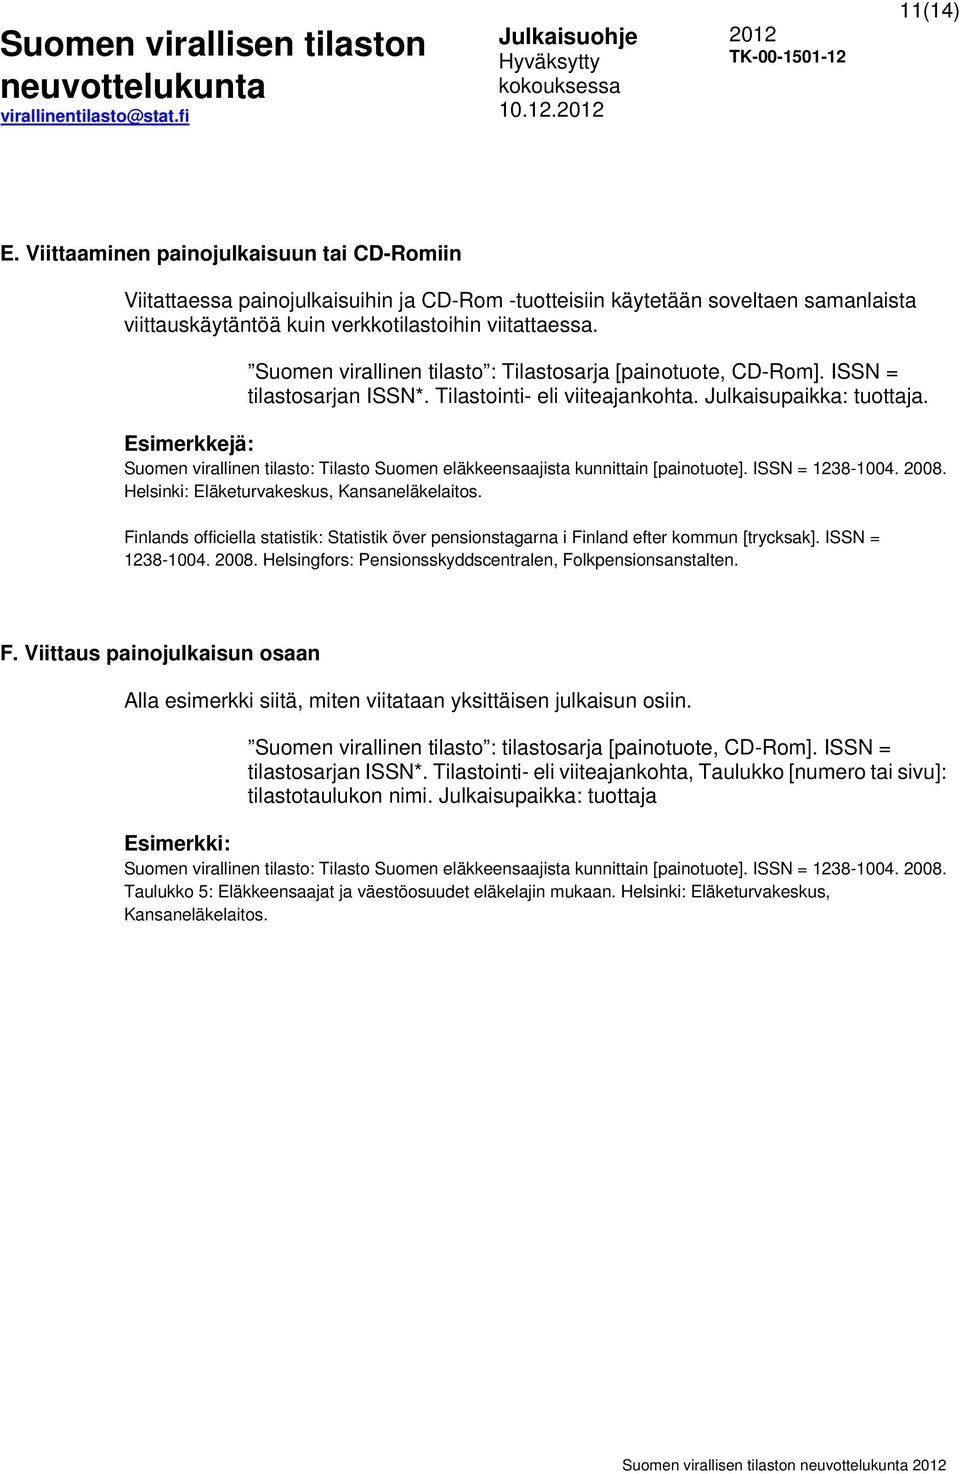 Esimerkkejä: Suomen virallinen tilasto: Tilasto Suomen eläkkeensaajista kunnittain [painotuote]. ISSN = 1238-1004. 2008. Helsinki: Eläketurvakeskus, Kansaneläkelaitos.